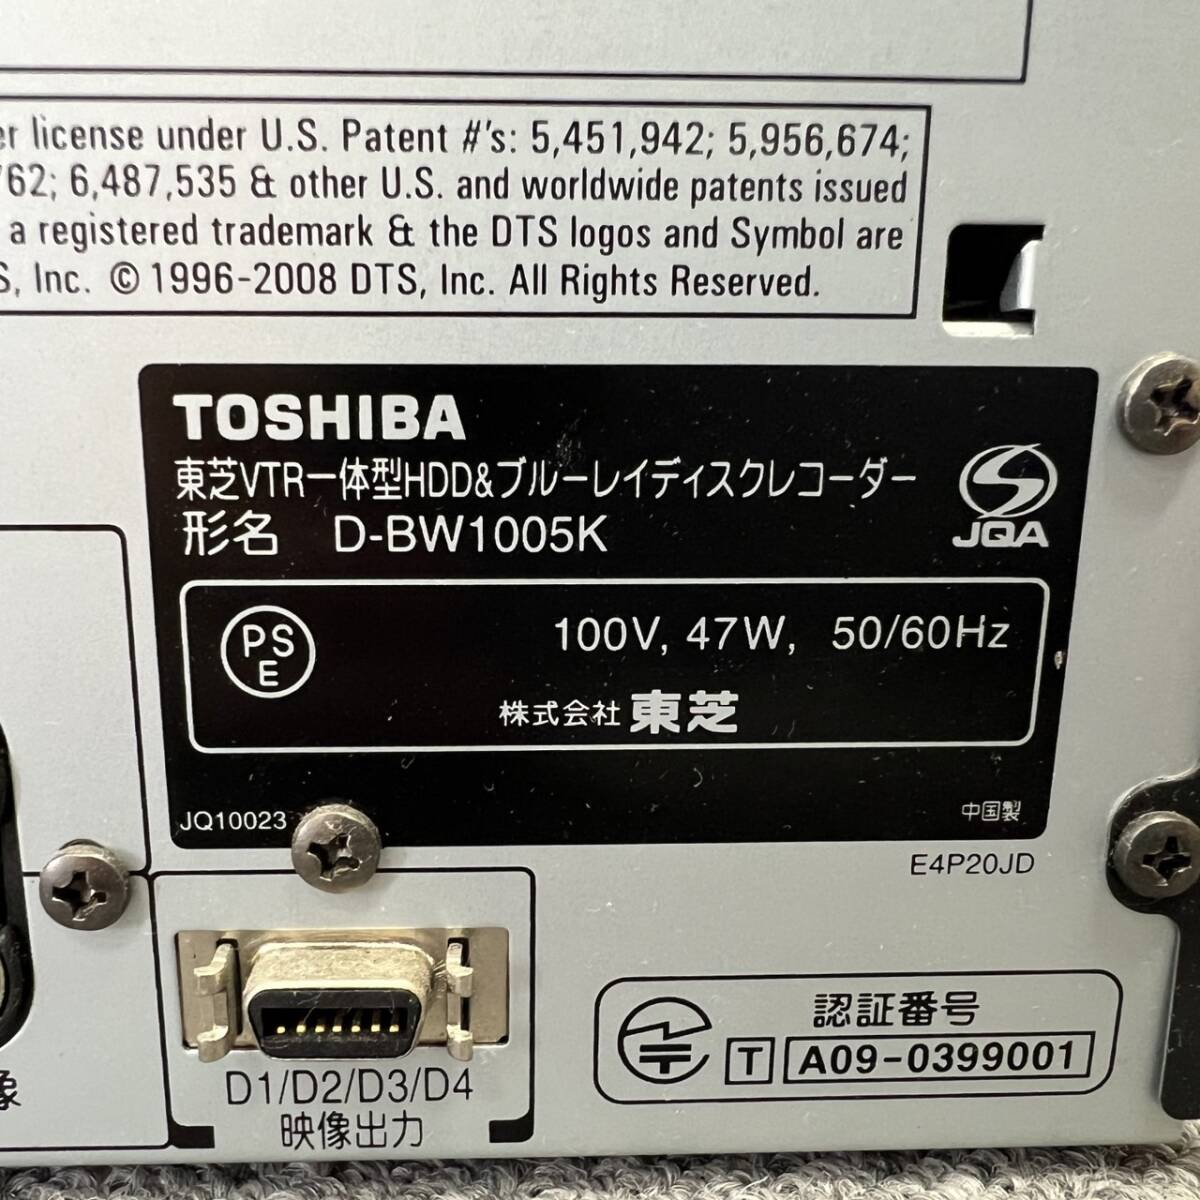 A003-M24-290 TOSHIBA Toshiba D-BW1005K VTR в одном корпусе HDD& Blue-ray диск магнитофон с дистанционным пультом корпус только электризация подтверждено 